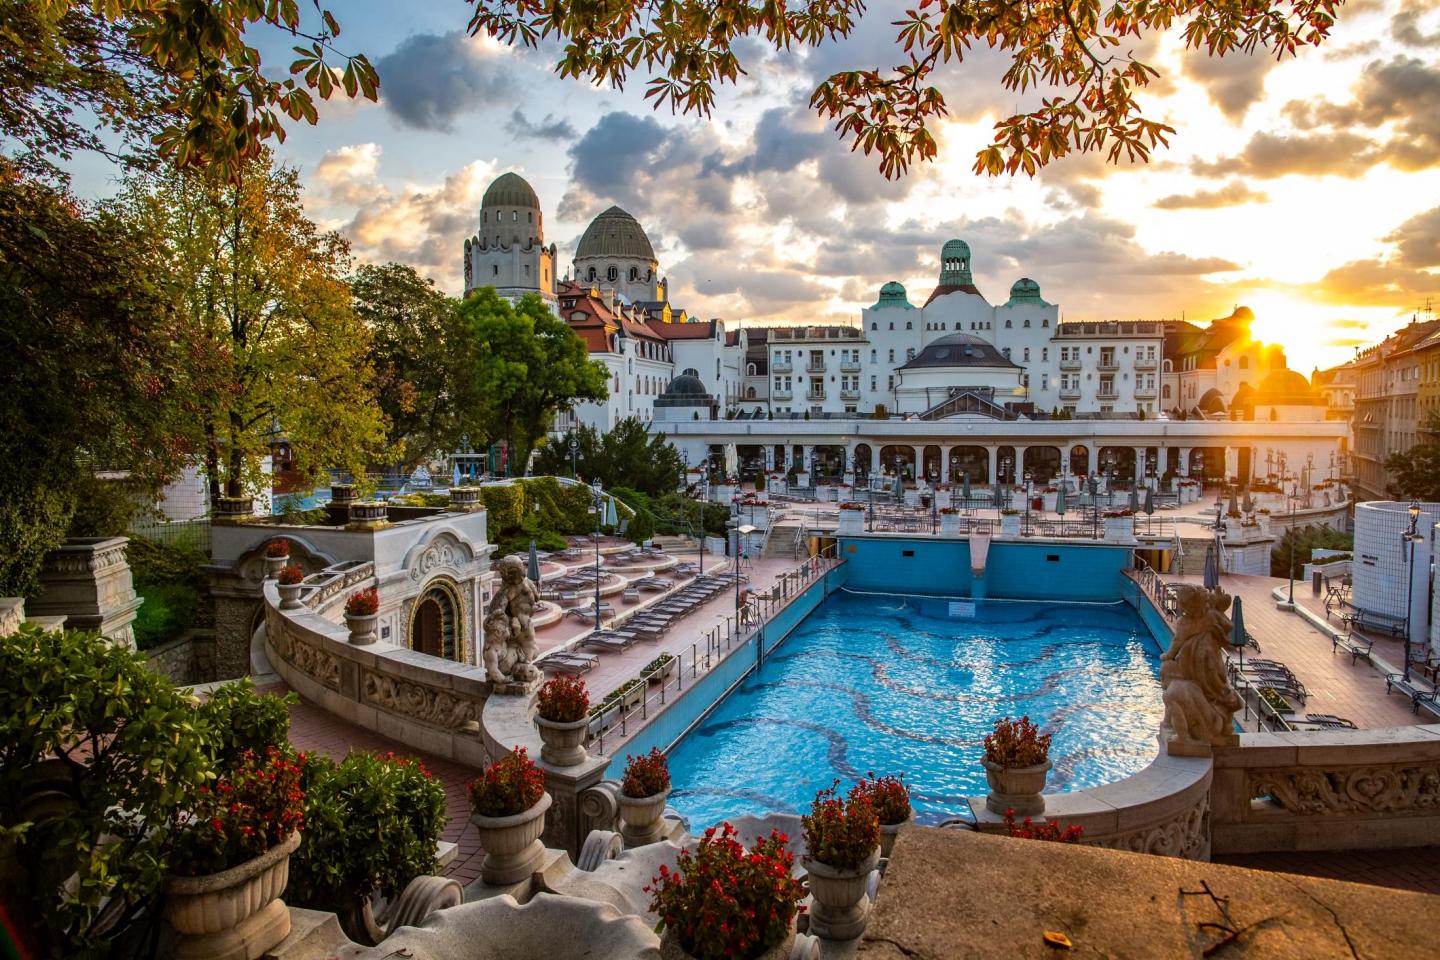 在皇宫般的塞切尼温泉浴场放松、游泳、下棋